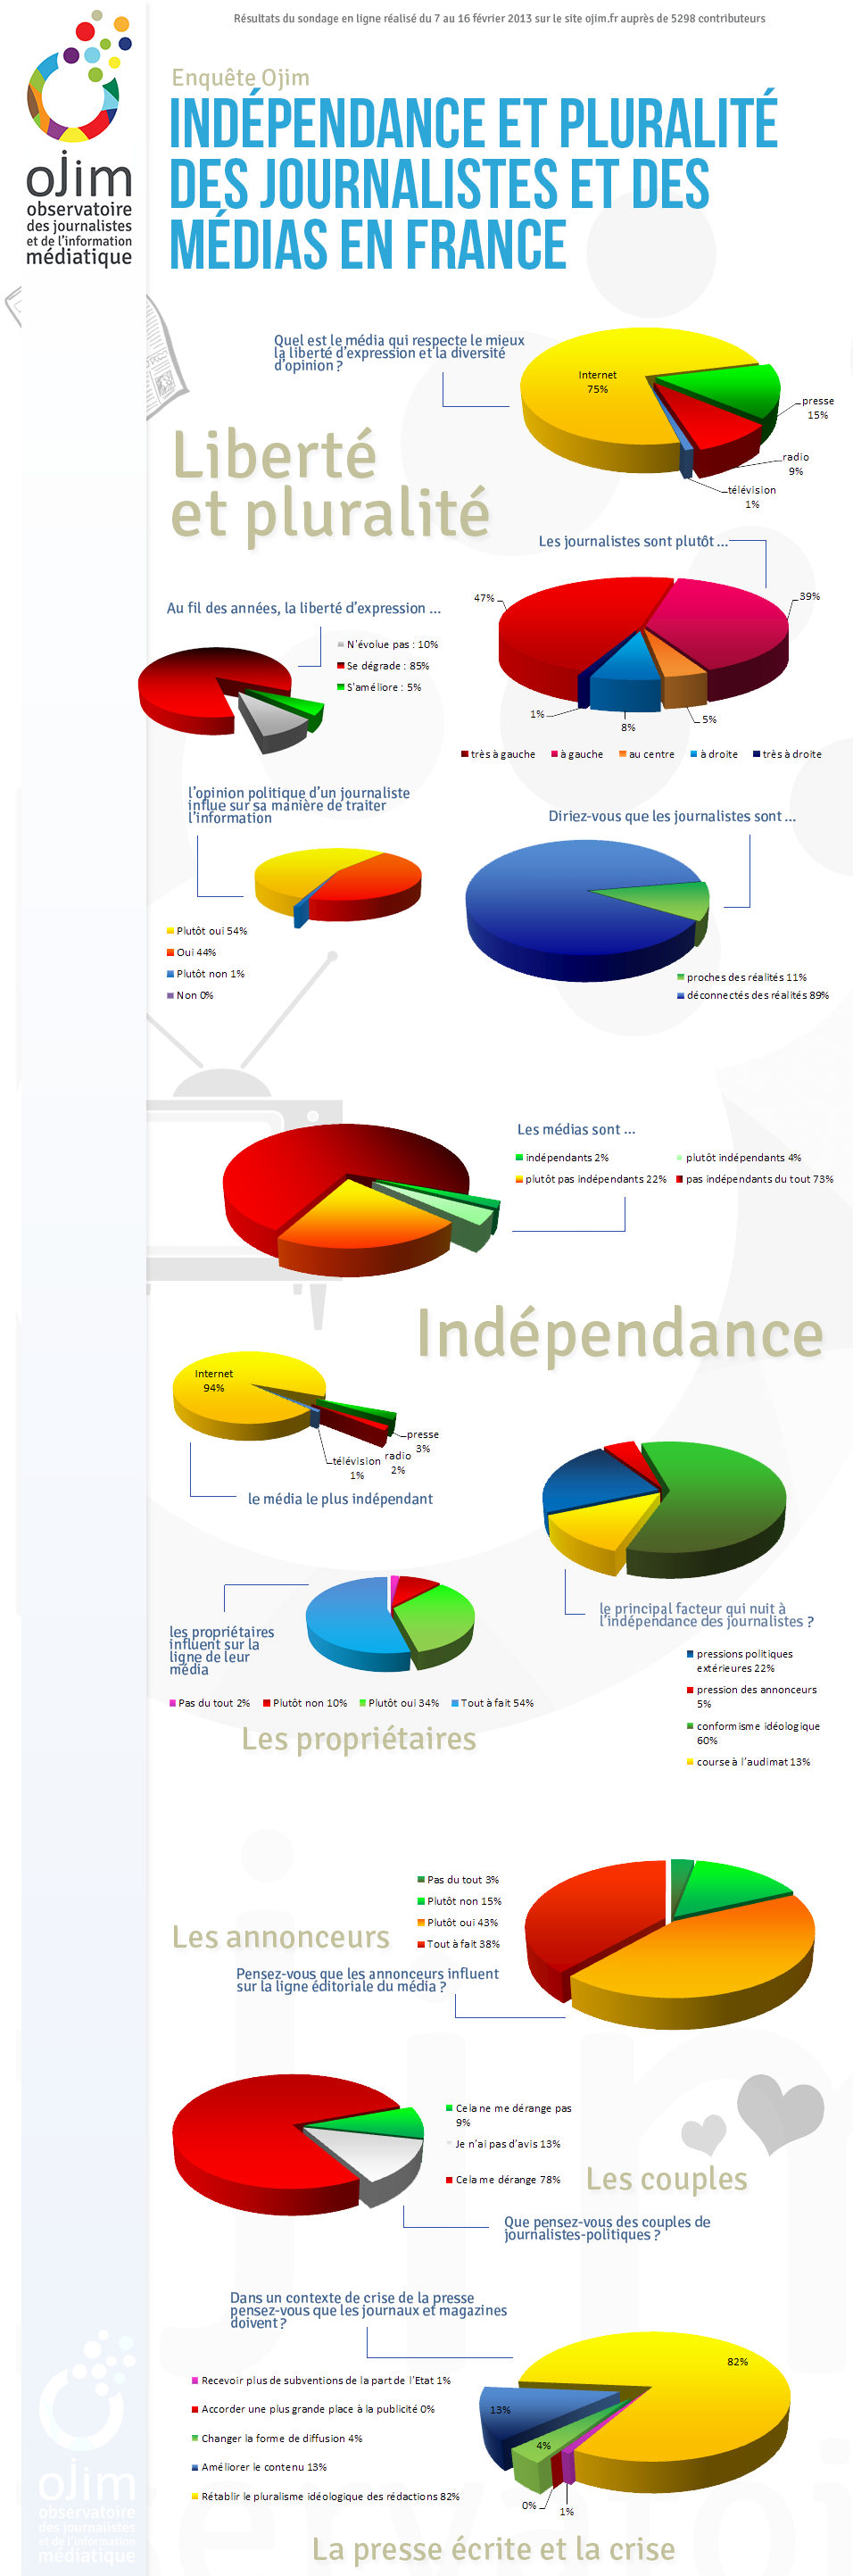 Enquête Ojim sur l'indépendance et la pluralité des médias : les résultats de notre sondage